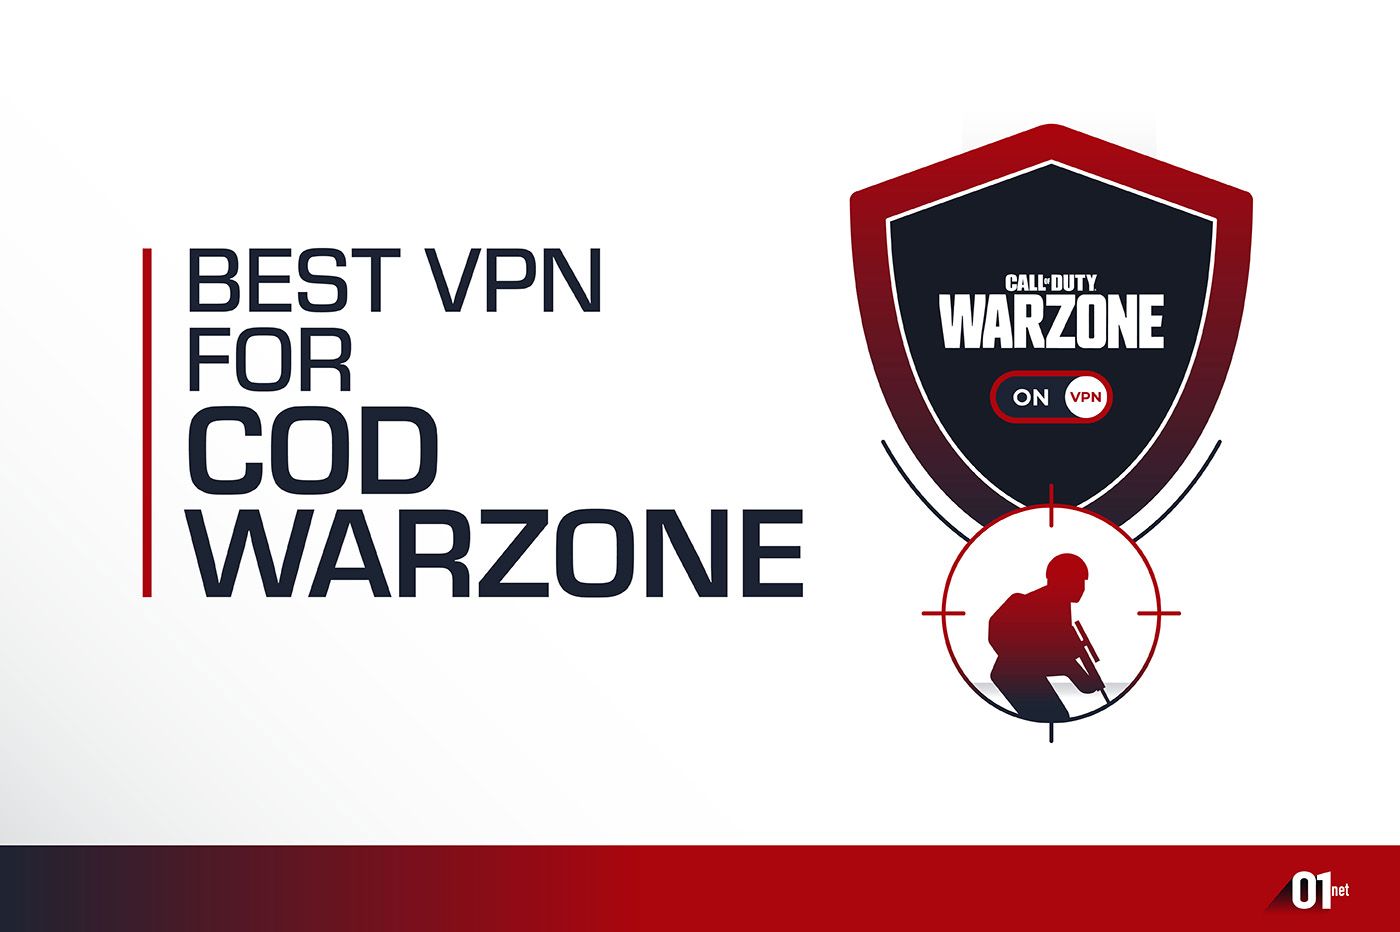 Best VPN Call of Duty Warzone